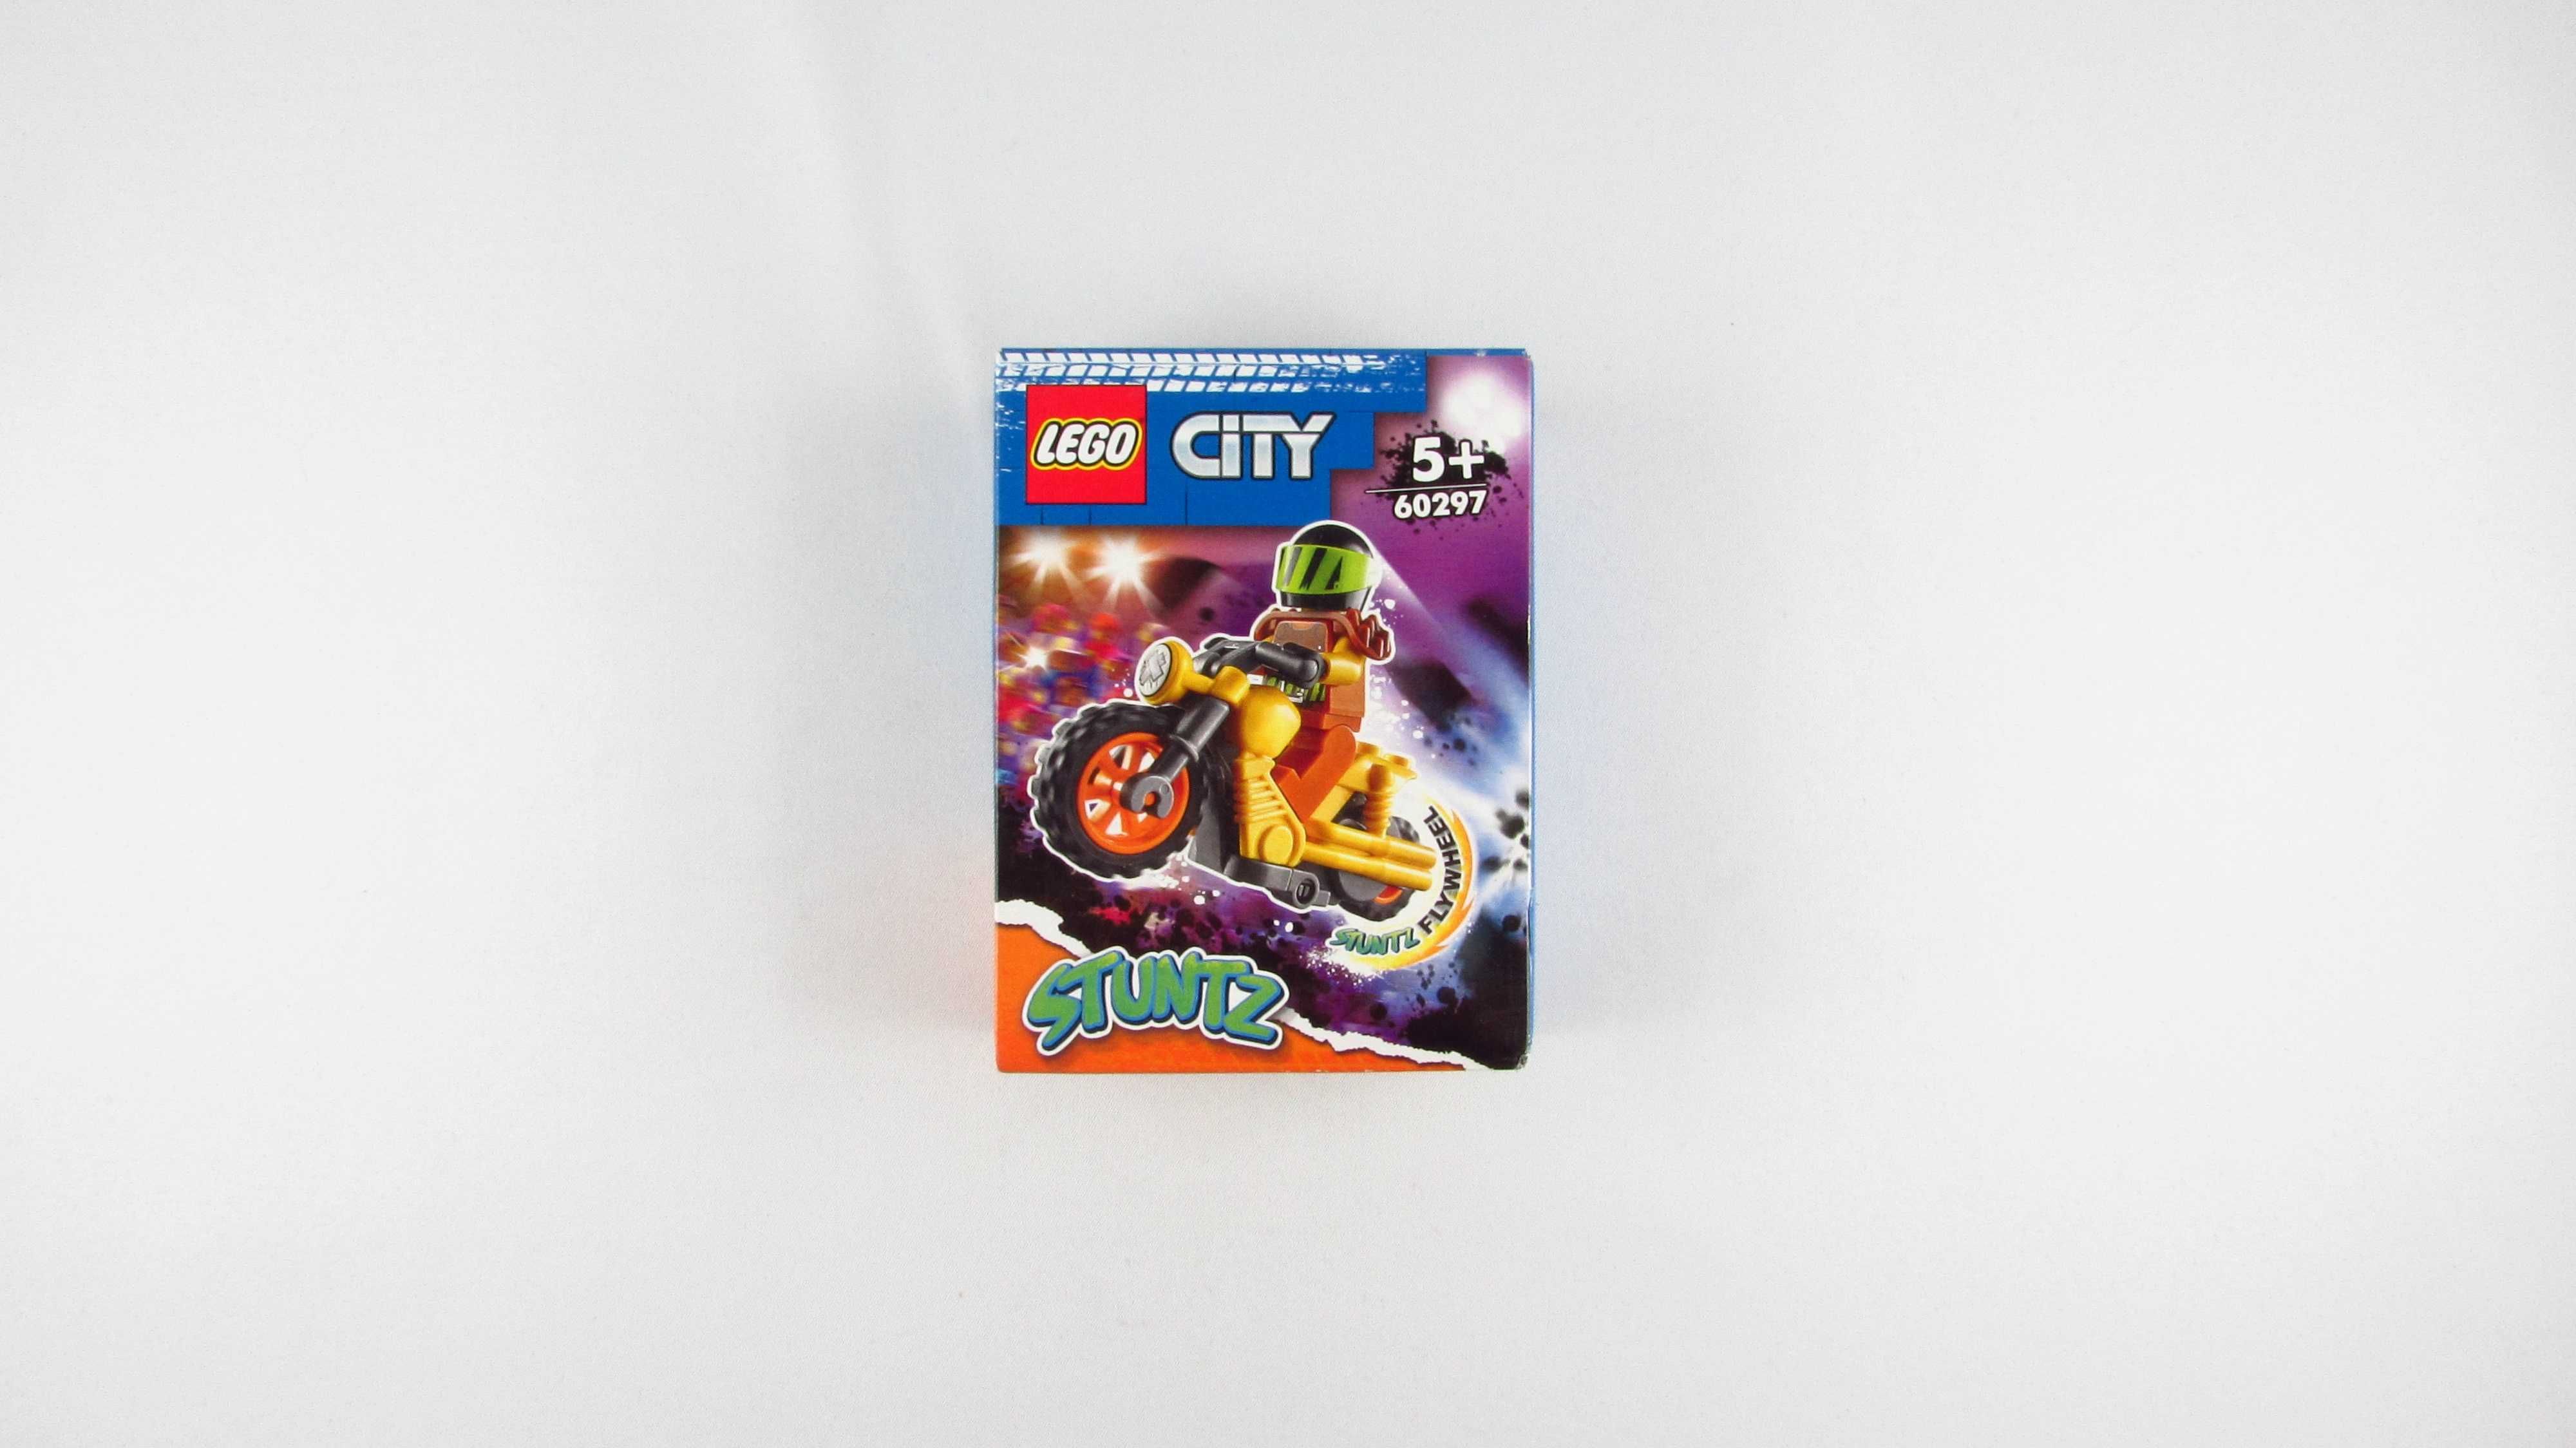 LEGO - City - Demolka na motocyklu kaskaderskim 60297